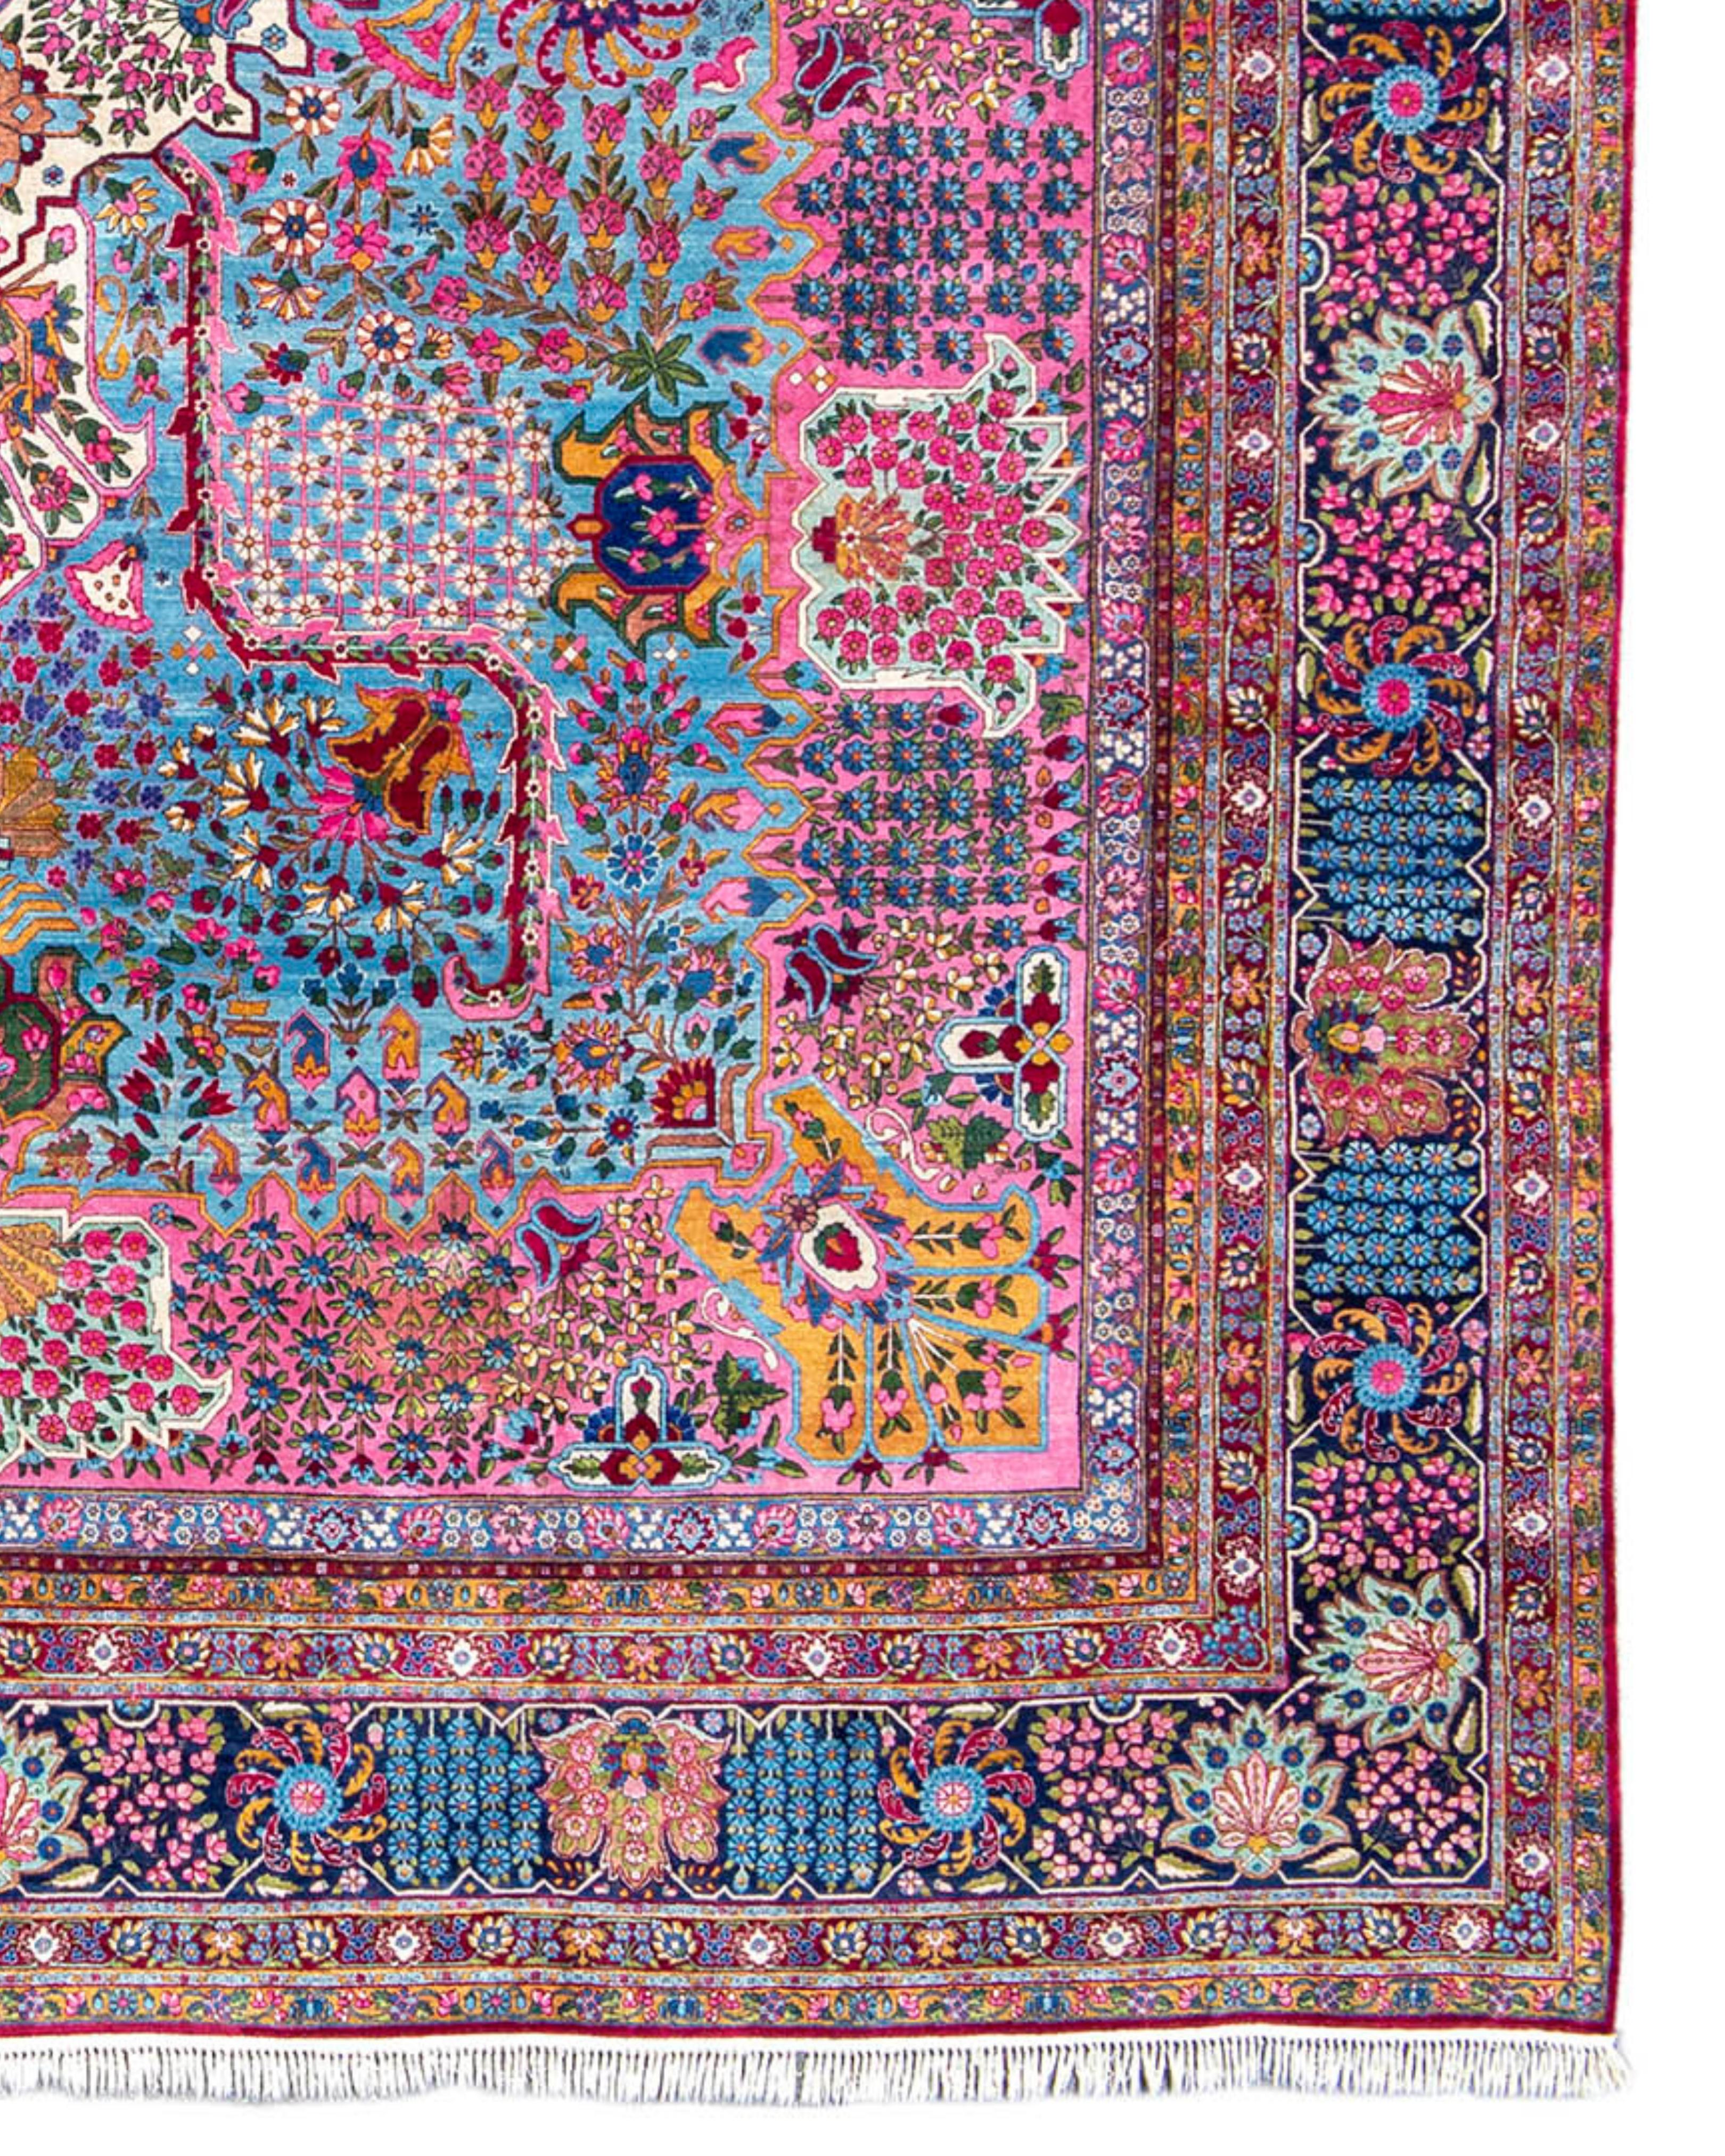 Grand tapis persan Kirman surdimensionné, début du 20e siècle

Informations supplémentaires :
Dimensions : 13.10